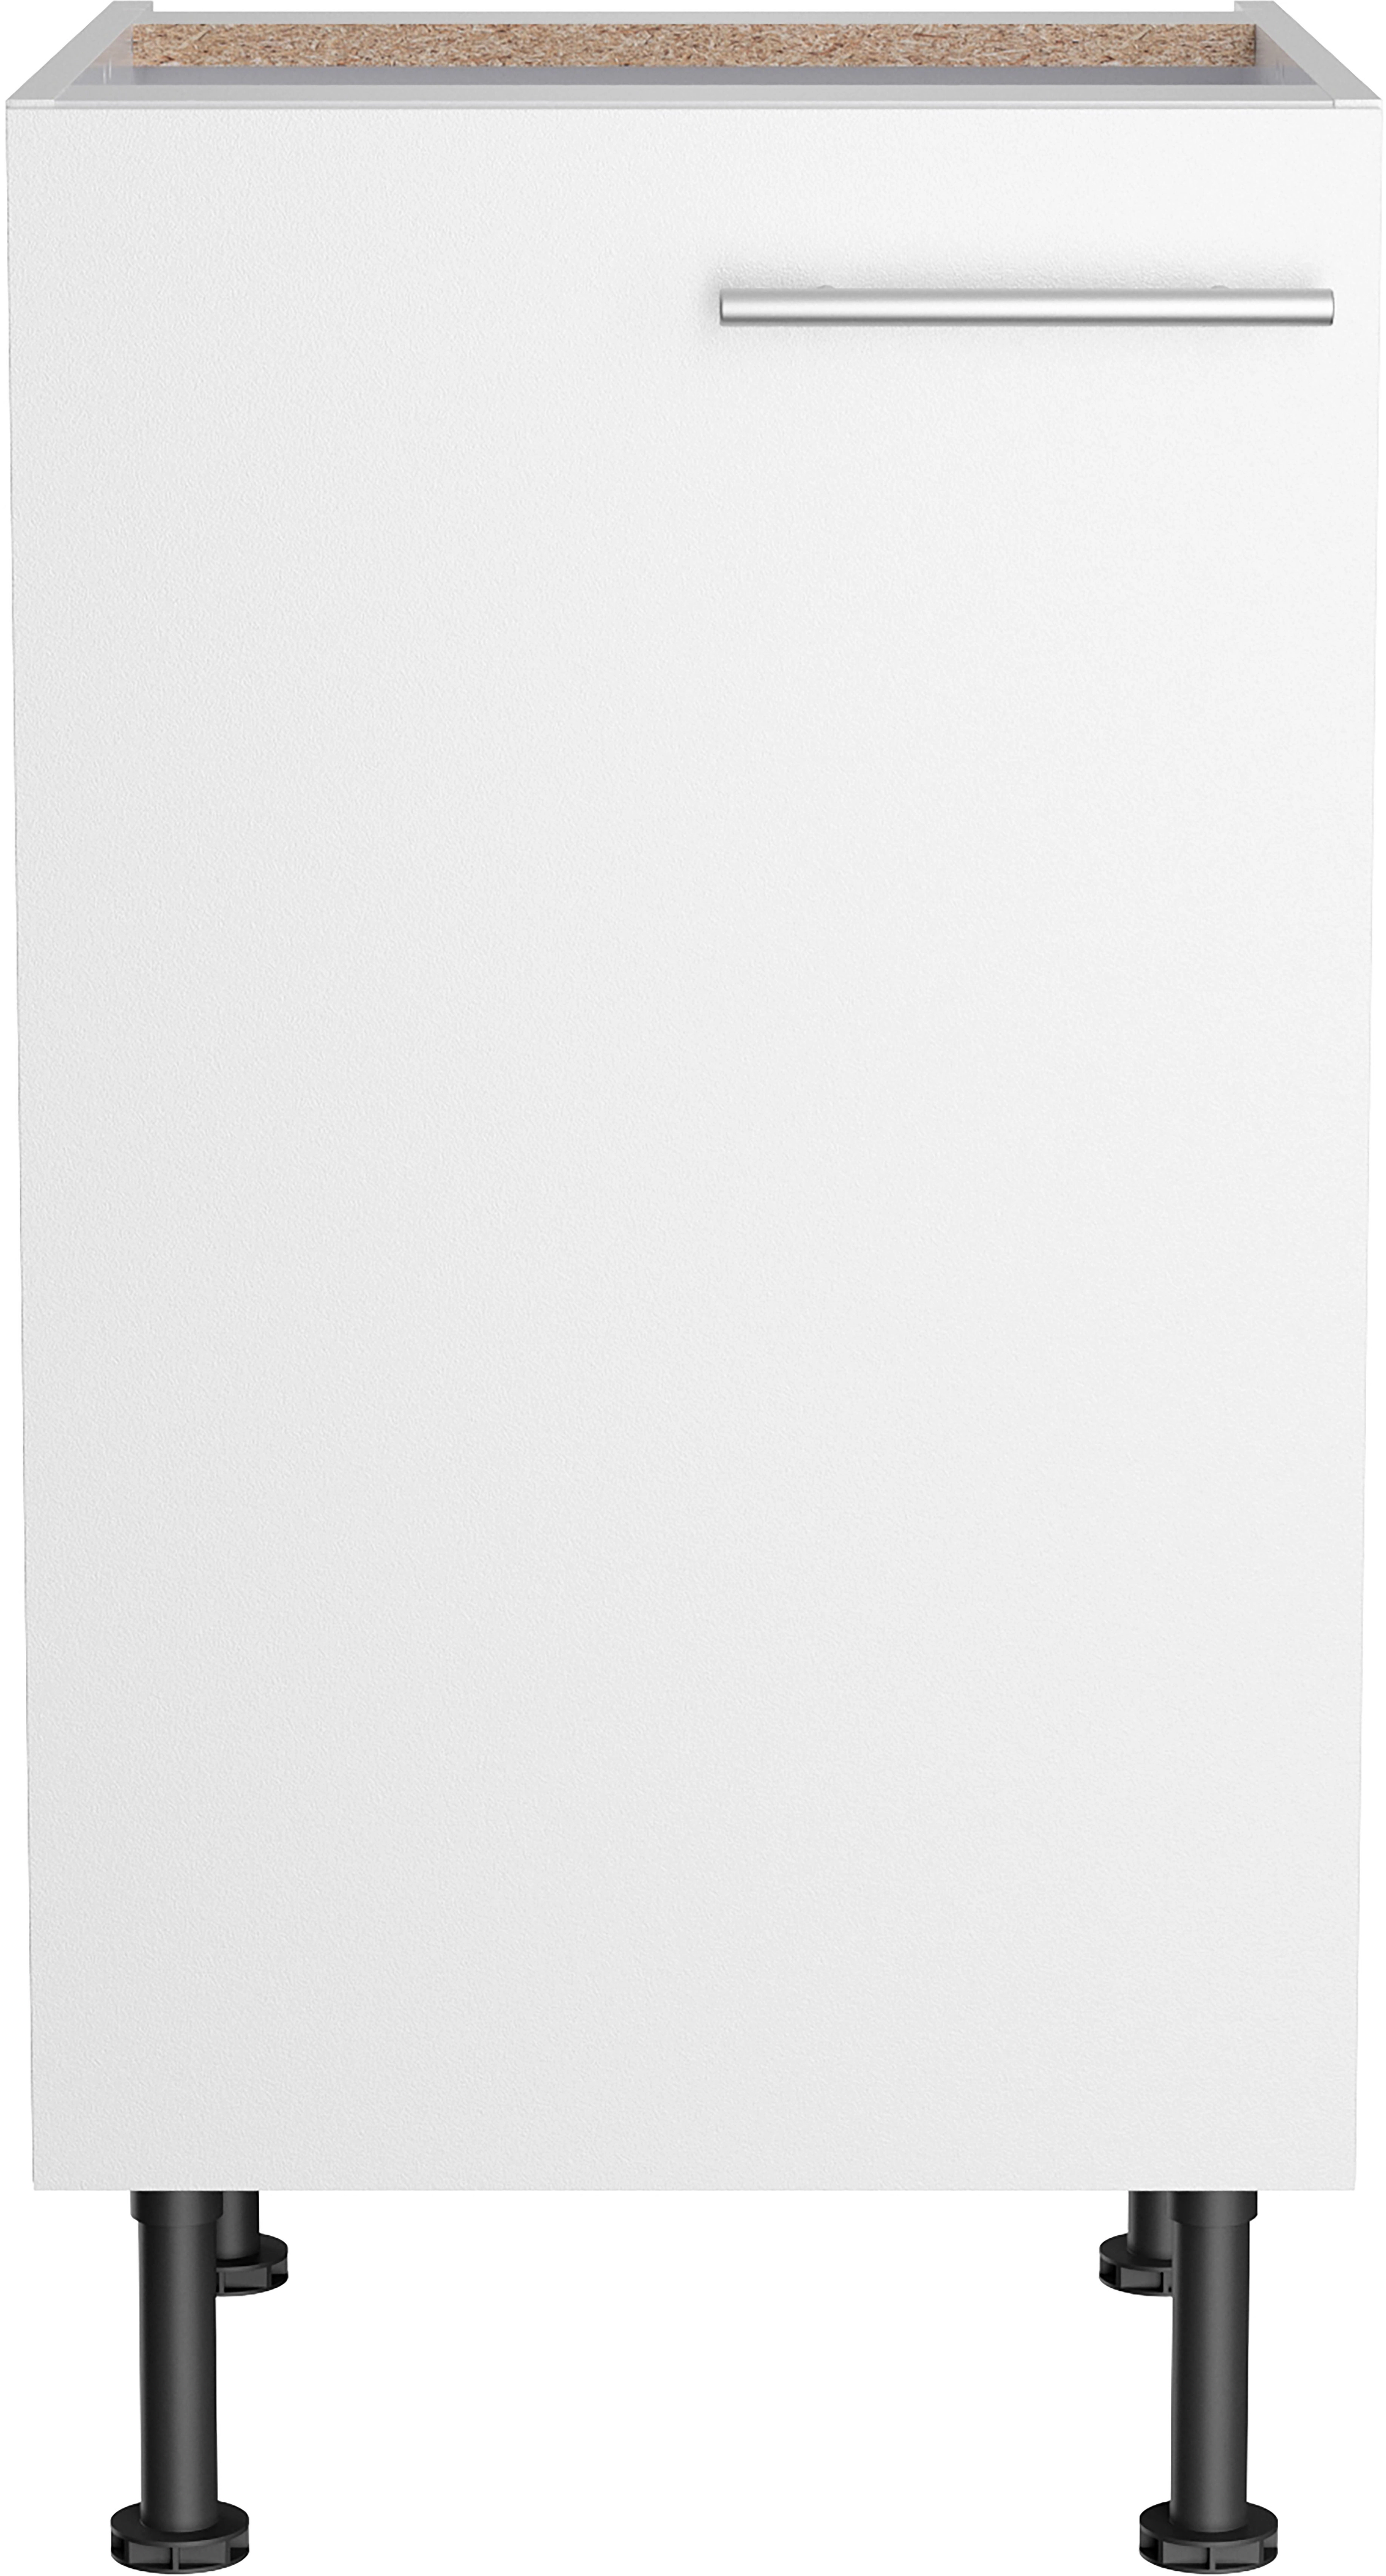 Optifit Unterschrank Bengt932 45 cm x 87 cm x 58,4 cm Weiß kaufen bei OBI